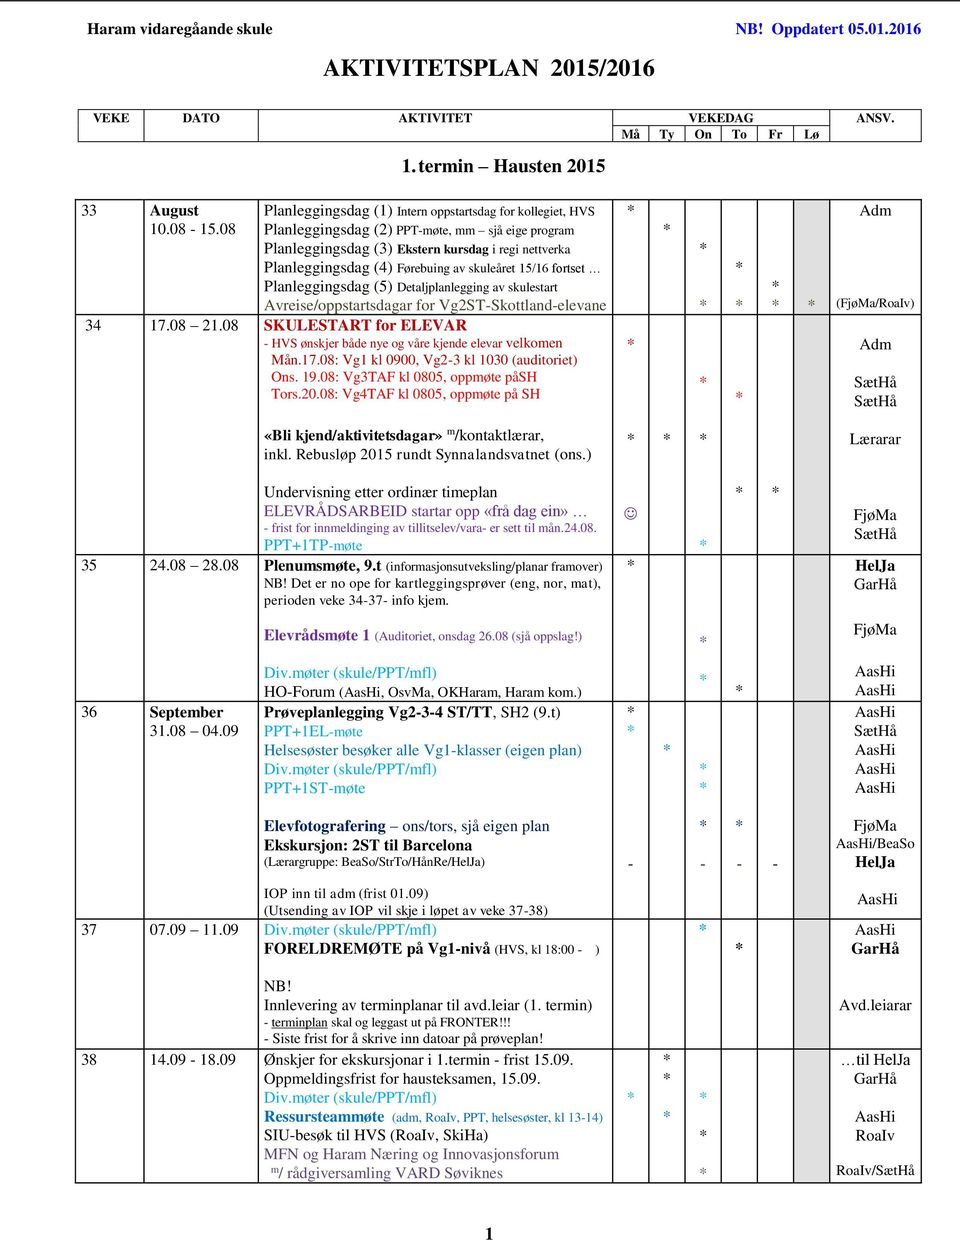 skuleåret 15/16 fortset Planleggingsdag (5) Detaljplanlegging av skulestart Avreise/oppstartsdagar for Vg2ST-Skottland-elevane 34 17.08 21.